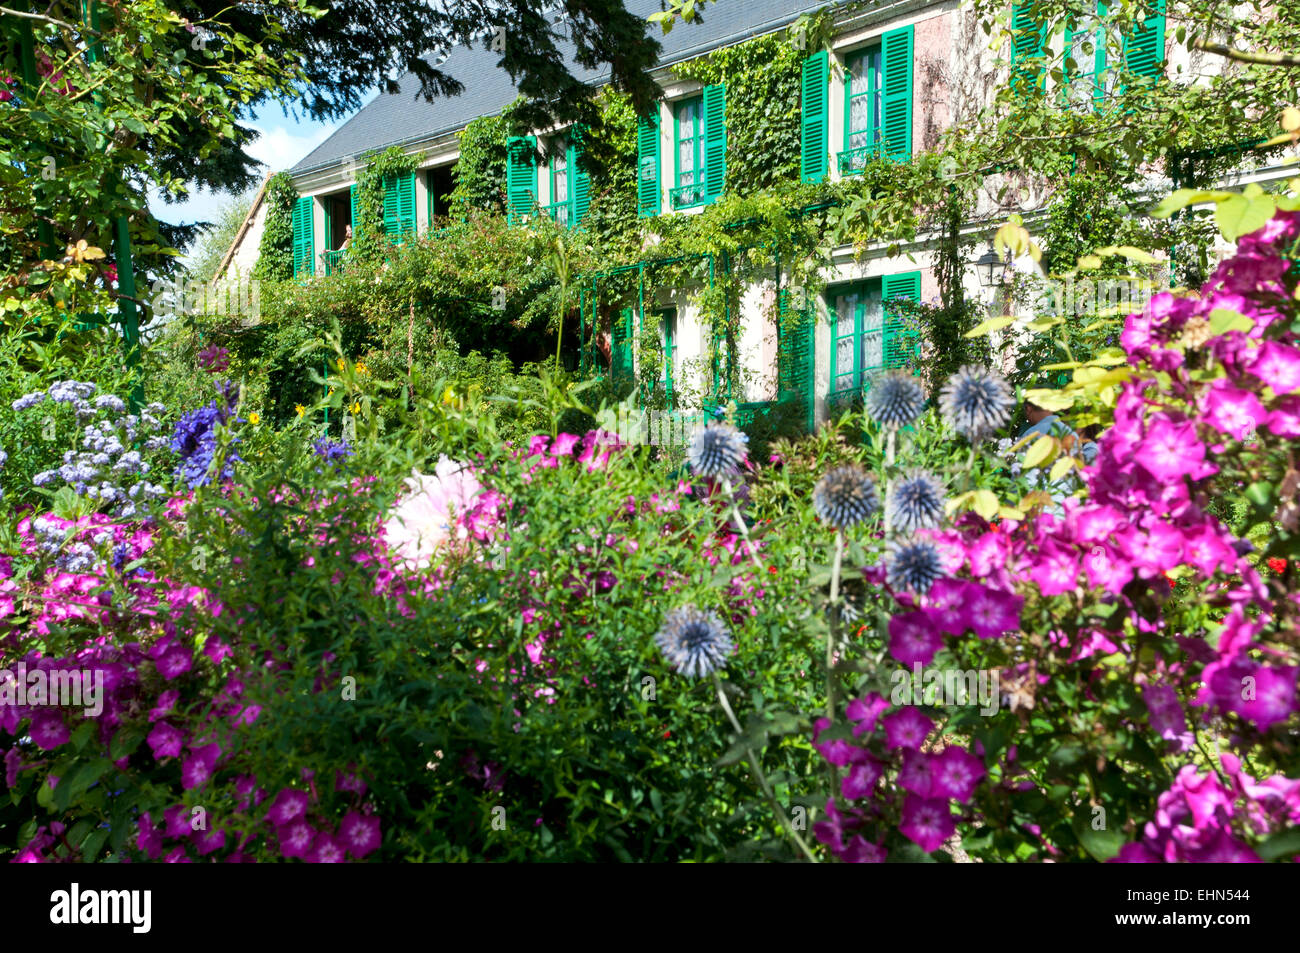 La maison et le jardin de Claude Monet Giverny Departement Eure France Europe Banque D'Images